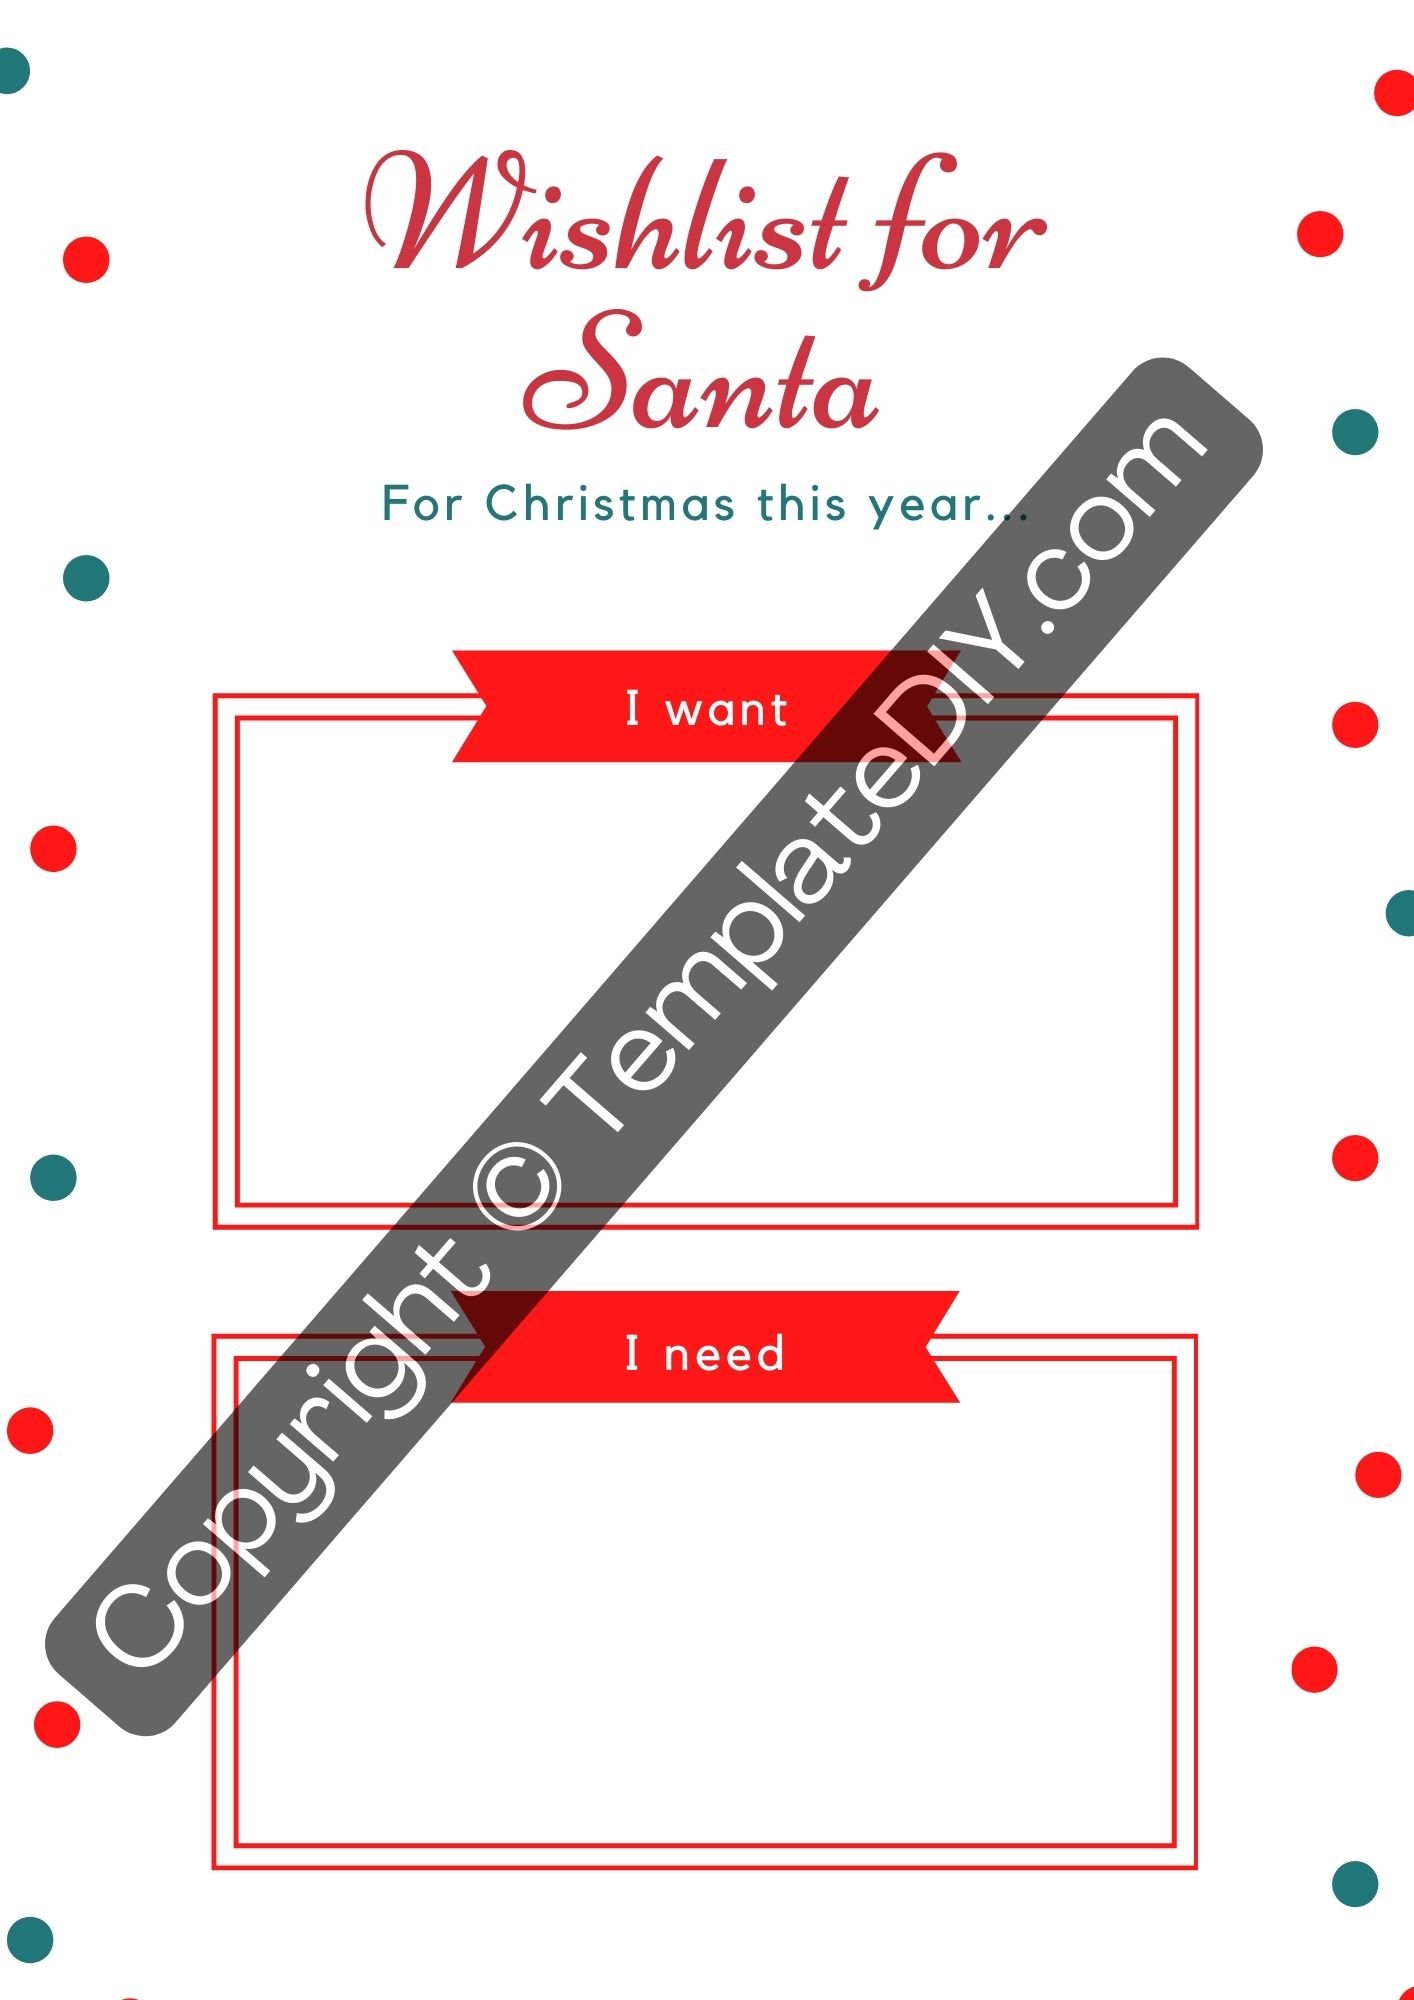 Christmas Wish List Templates